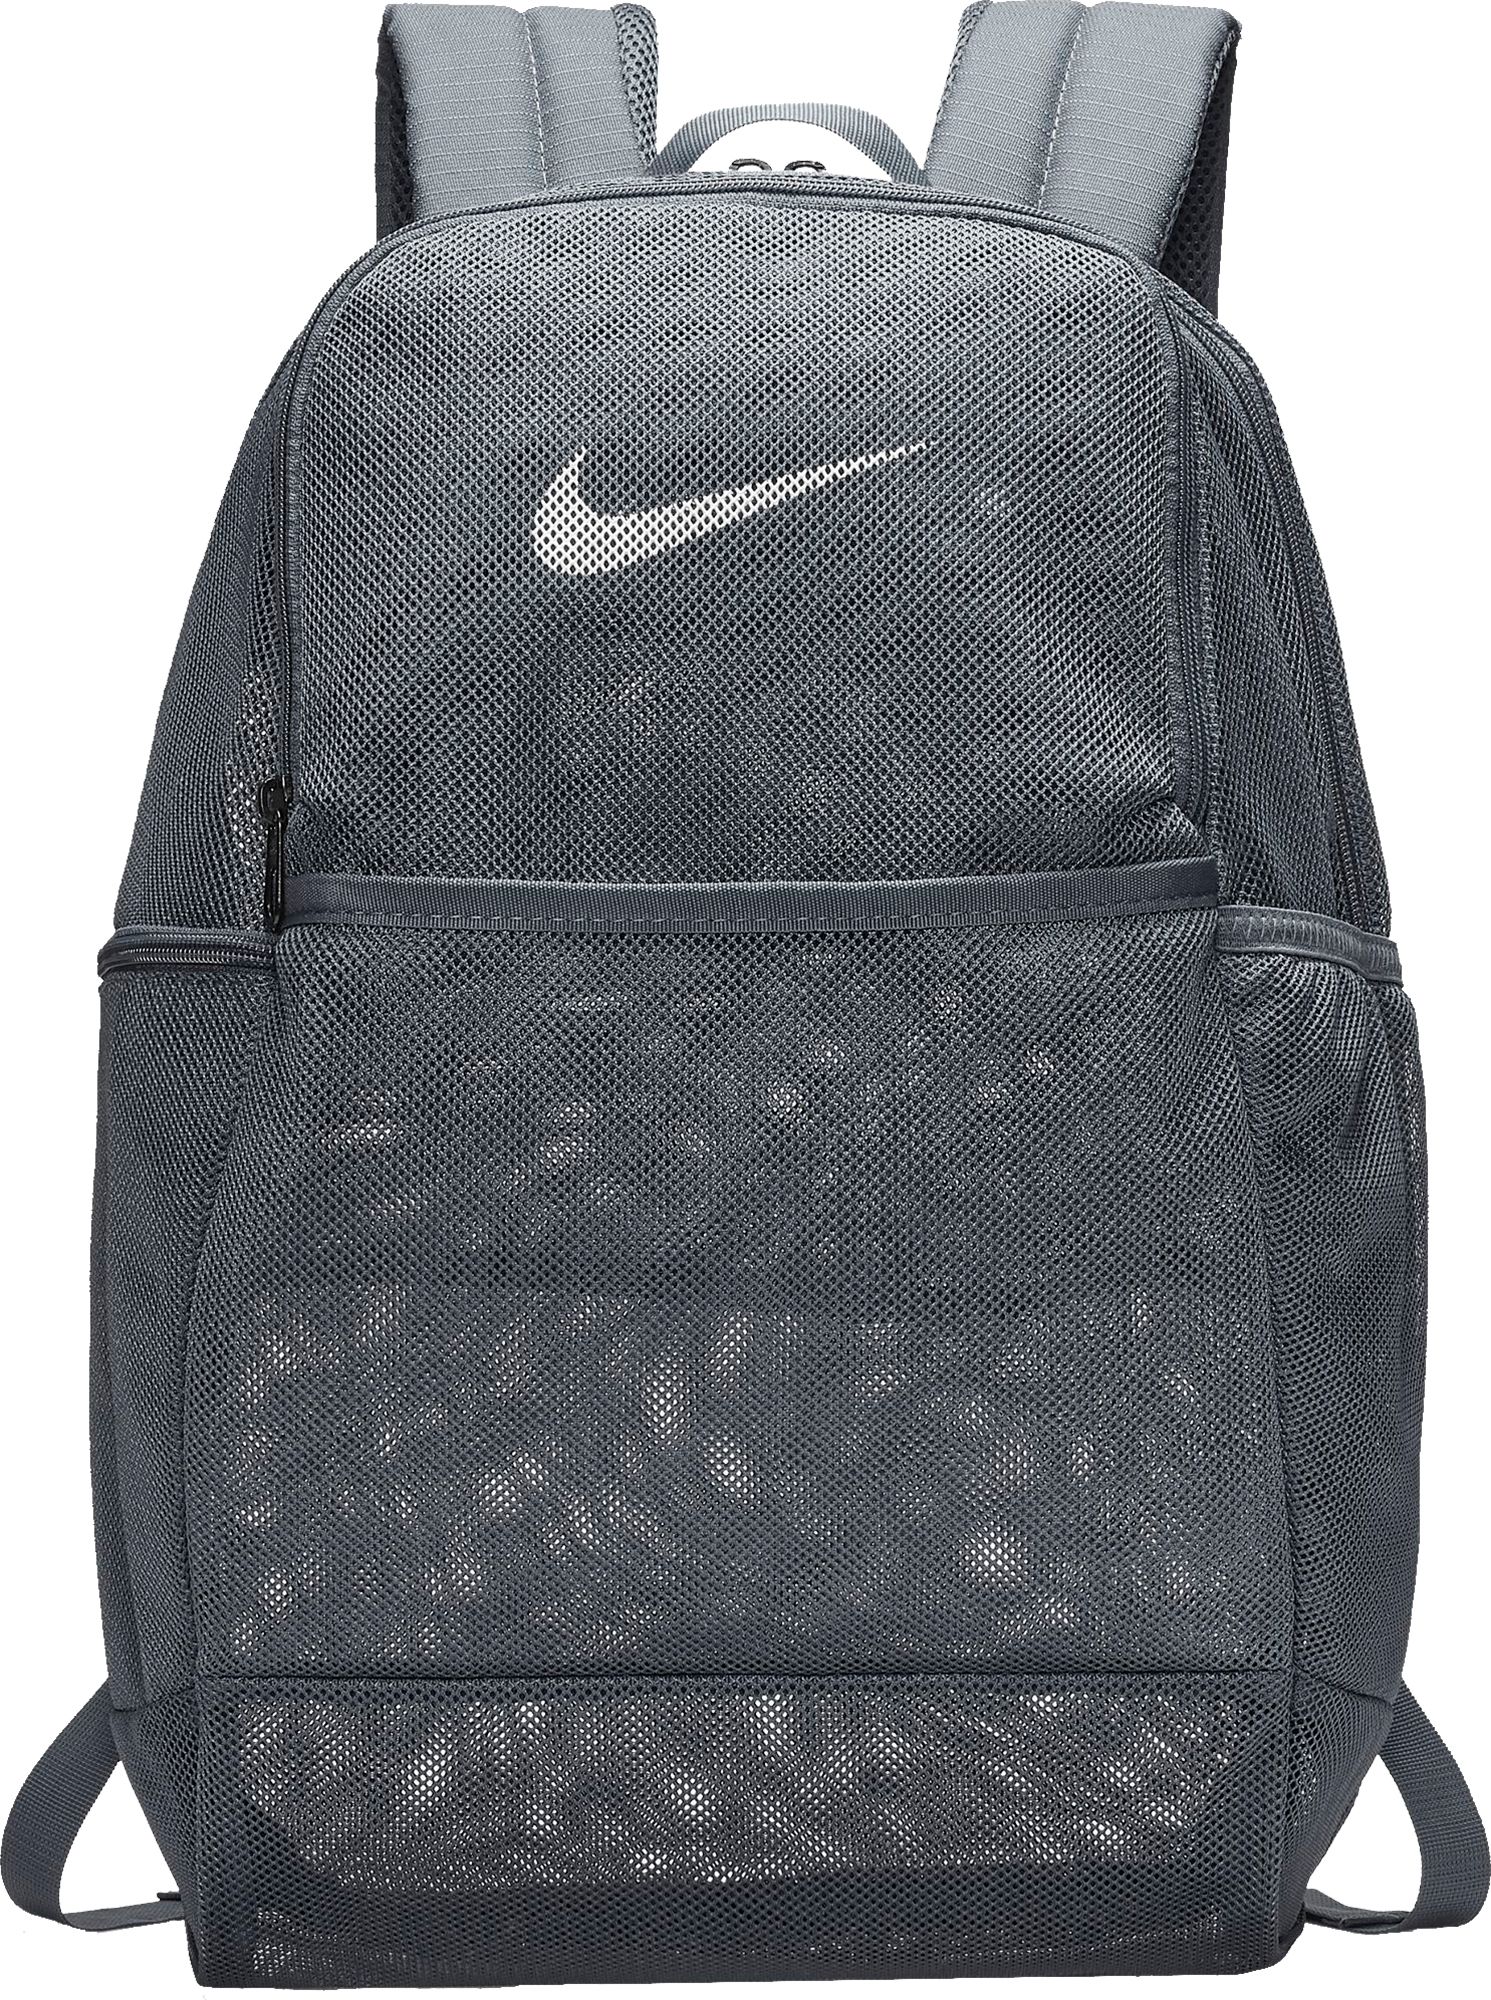 light blue nike mesh backpack